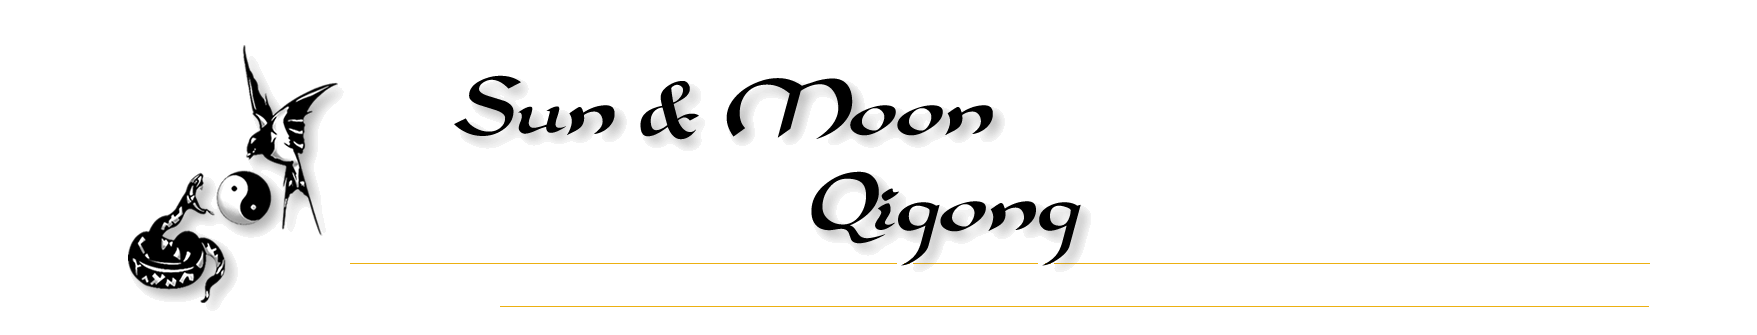 Sun & Moon Qigong